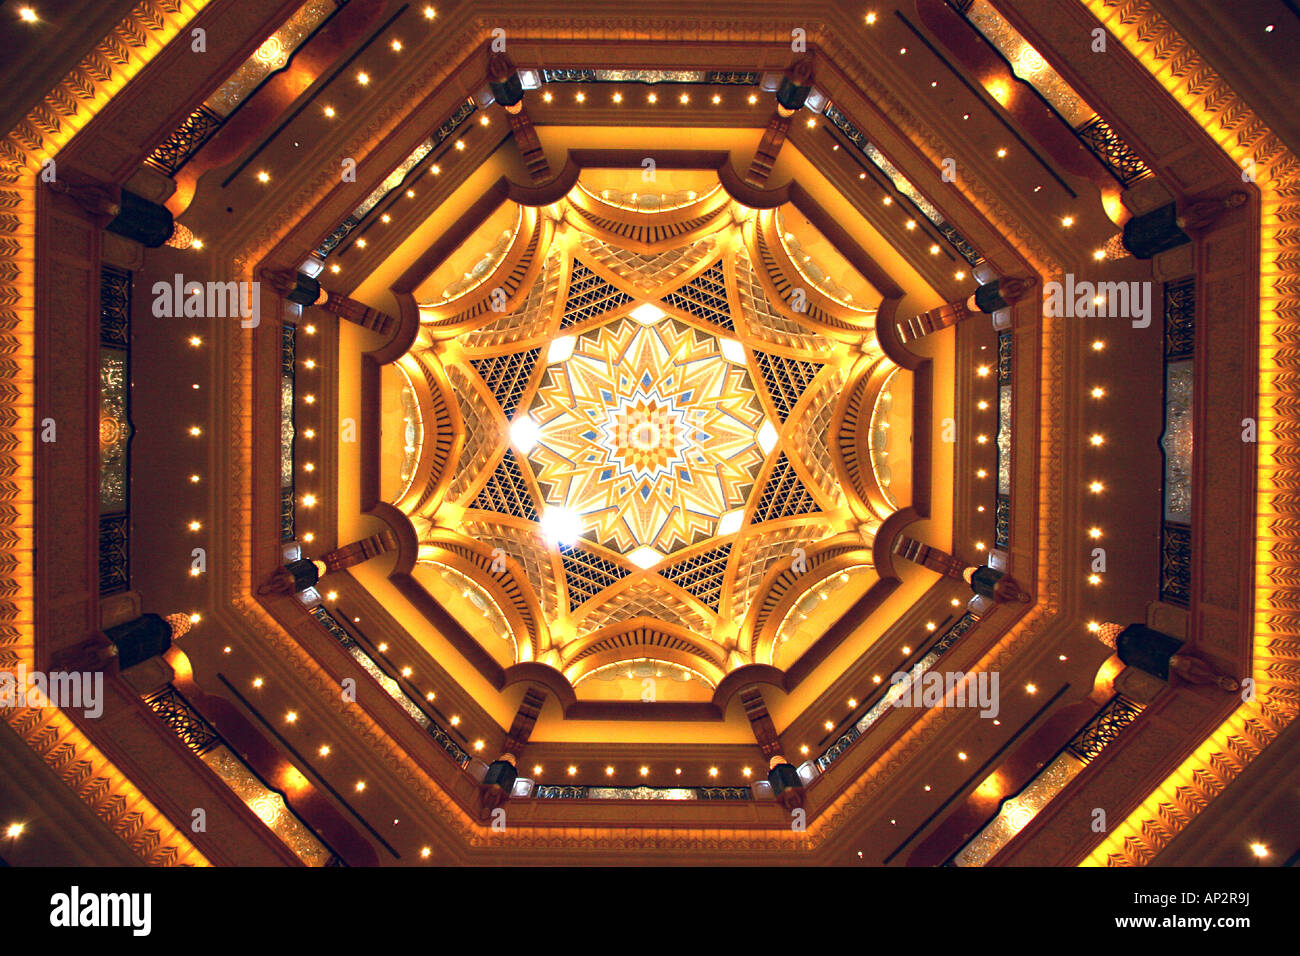 The Atrium ceiling inside the Emirates Palace Hotel in Abu Dhabi, United Arab Emirates, UAE Stock Photo